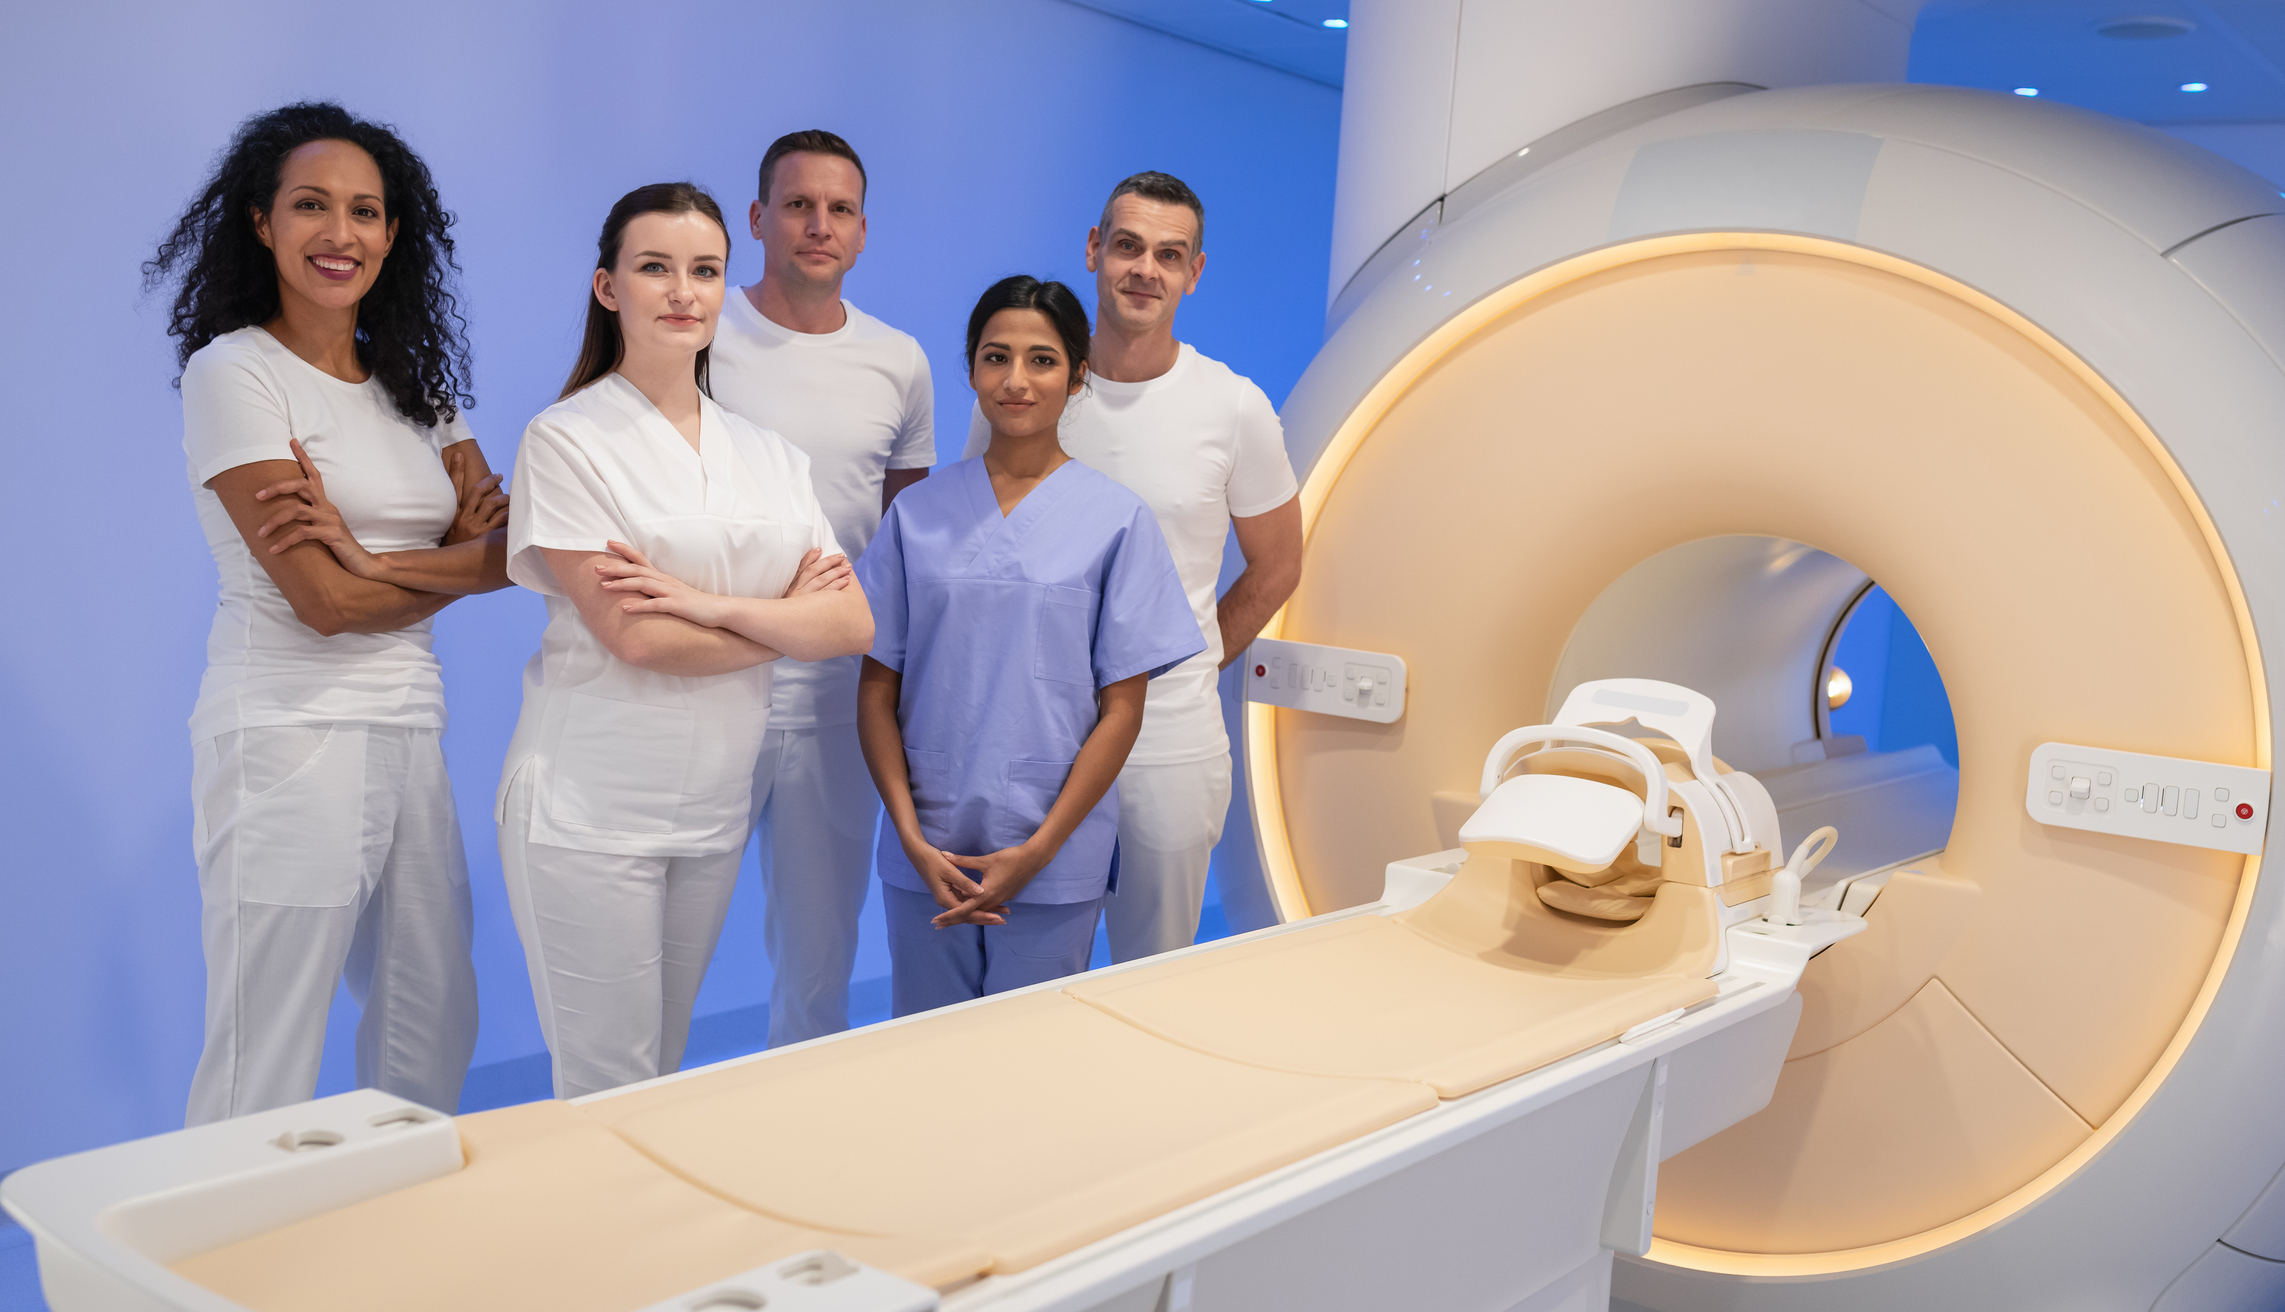 MRI Technologists